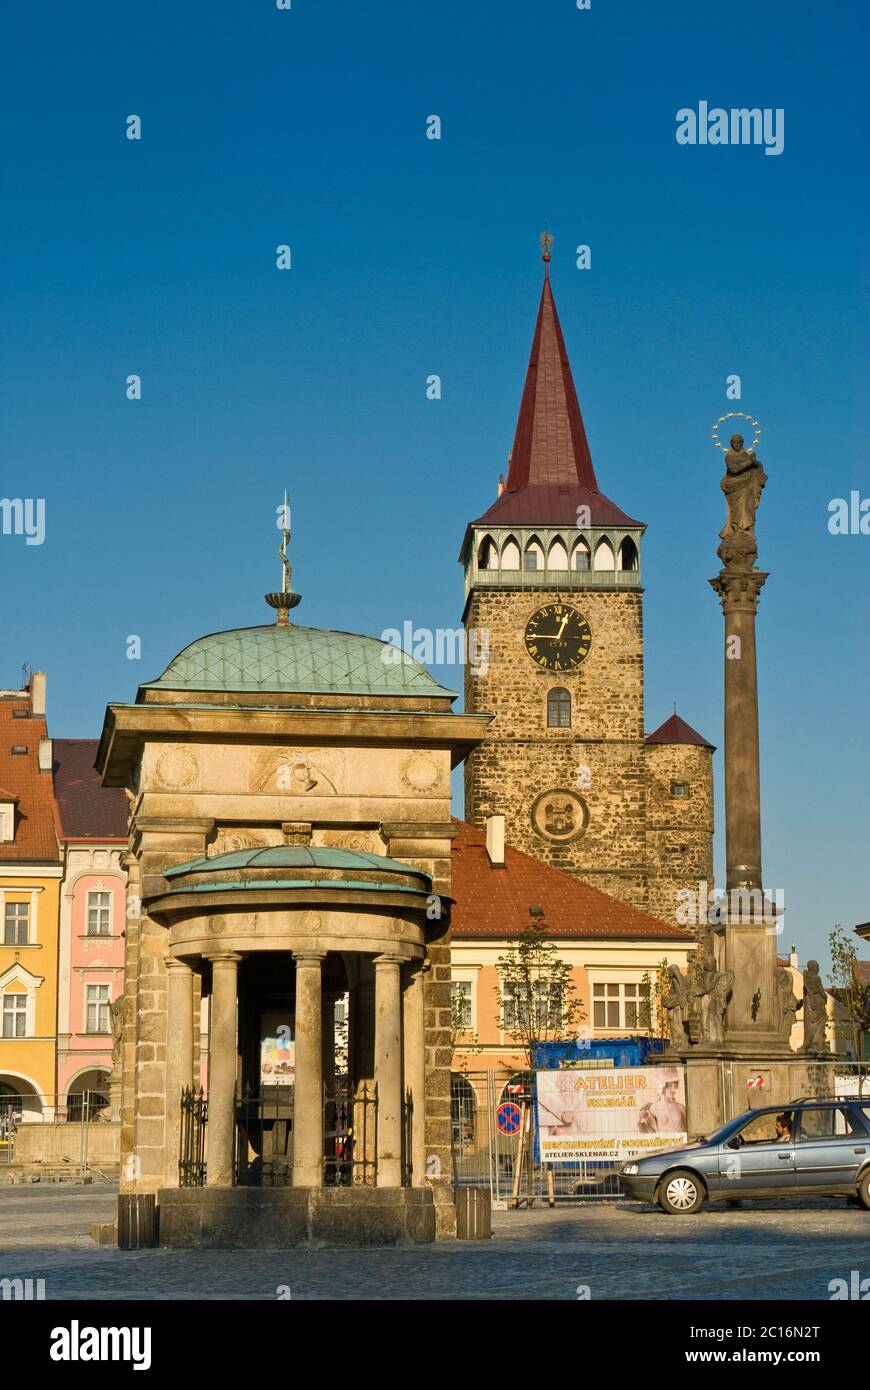 Valdicka Gate and plague column at Valdštejnské náměstí in Jičín in Kralovehradecky kraj (Hradec Králové Region), Czech Republic Stock Photo